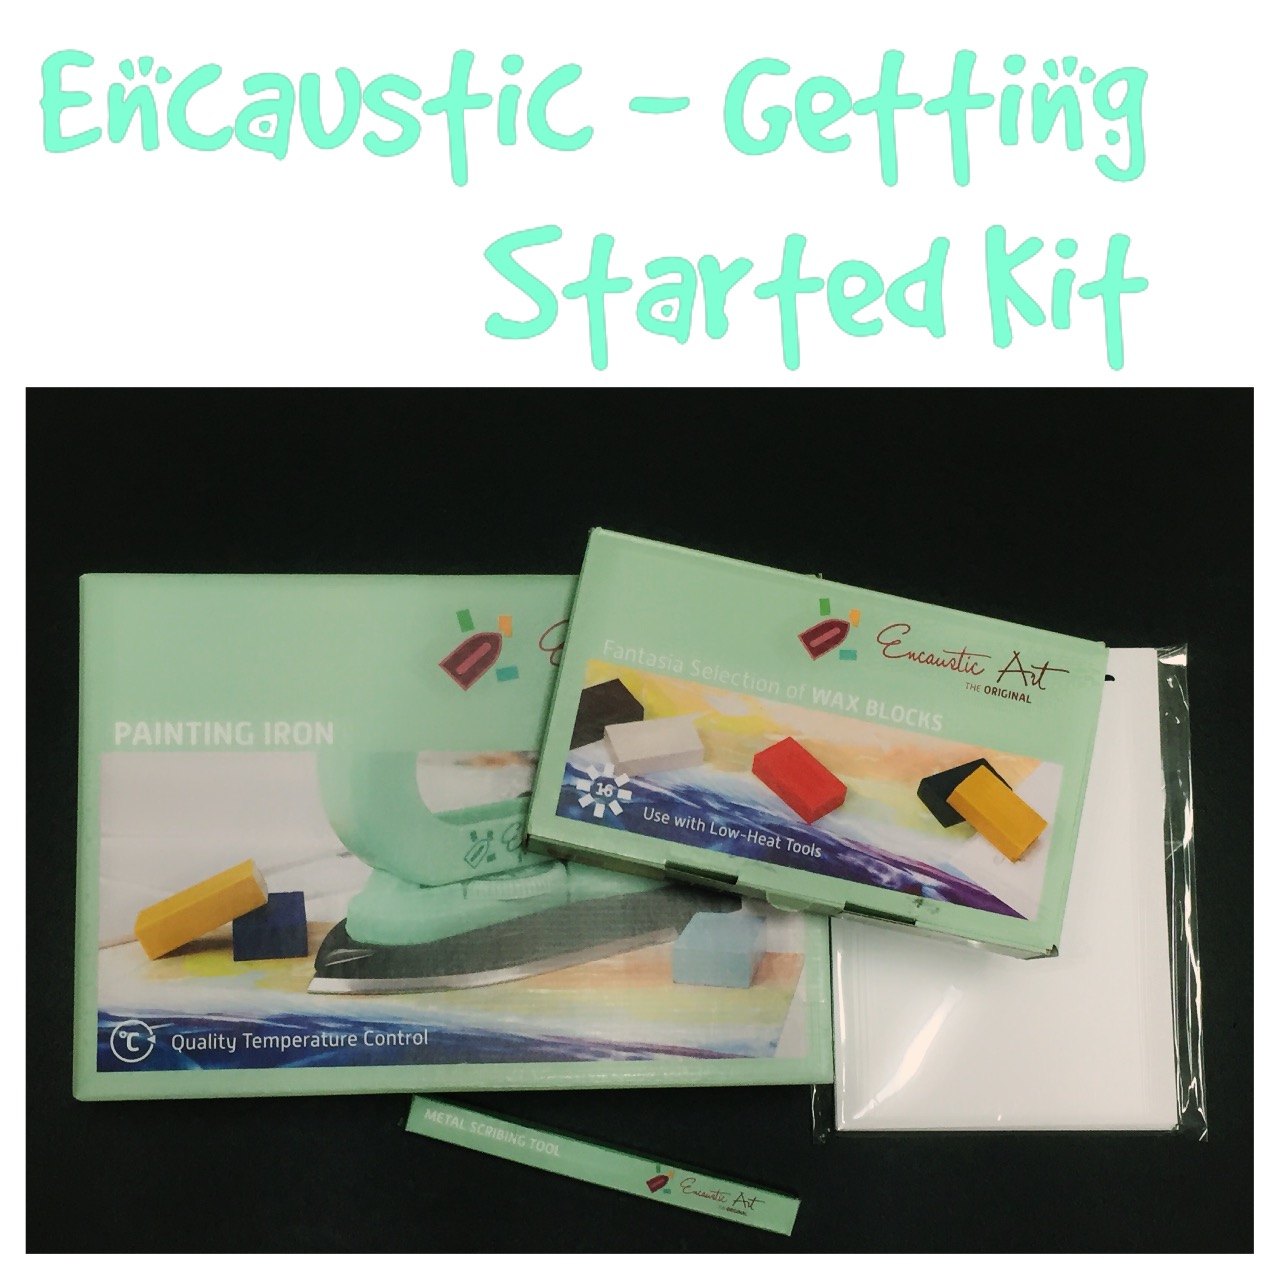 Encaustic Art Starter Set Painting Iron Wax Blocks Cards Scribing Tool